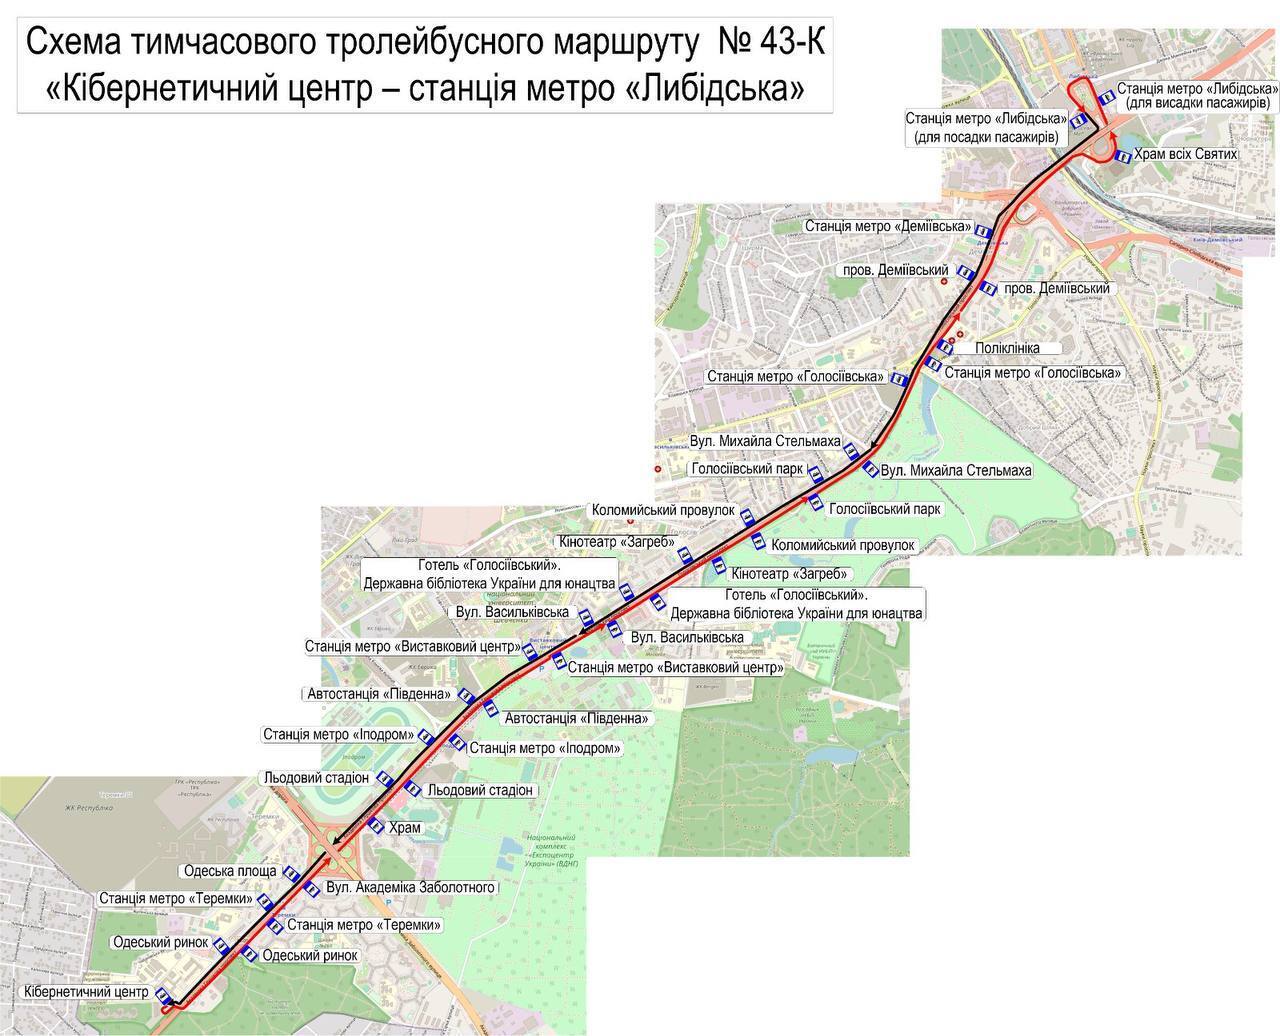 Произошла разгерметизация: в Киеве срочно закрыли движение поездов метро по части синей ветки. Видео